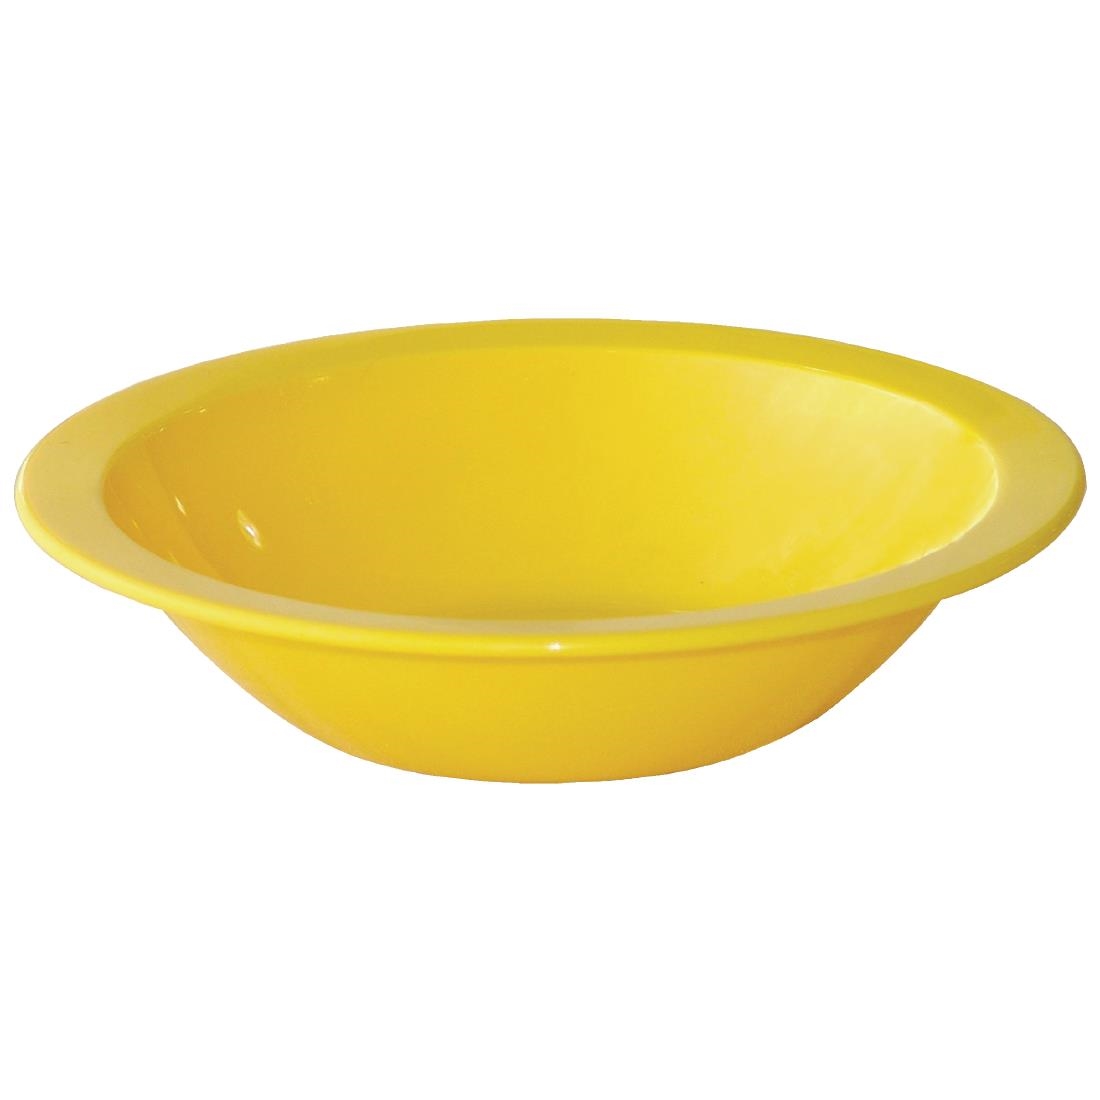 Bowl 14oz – Yellow